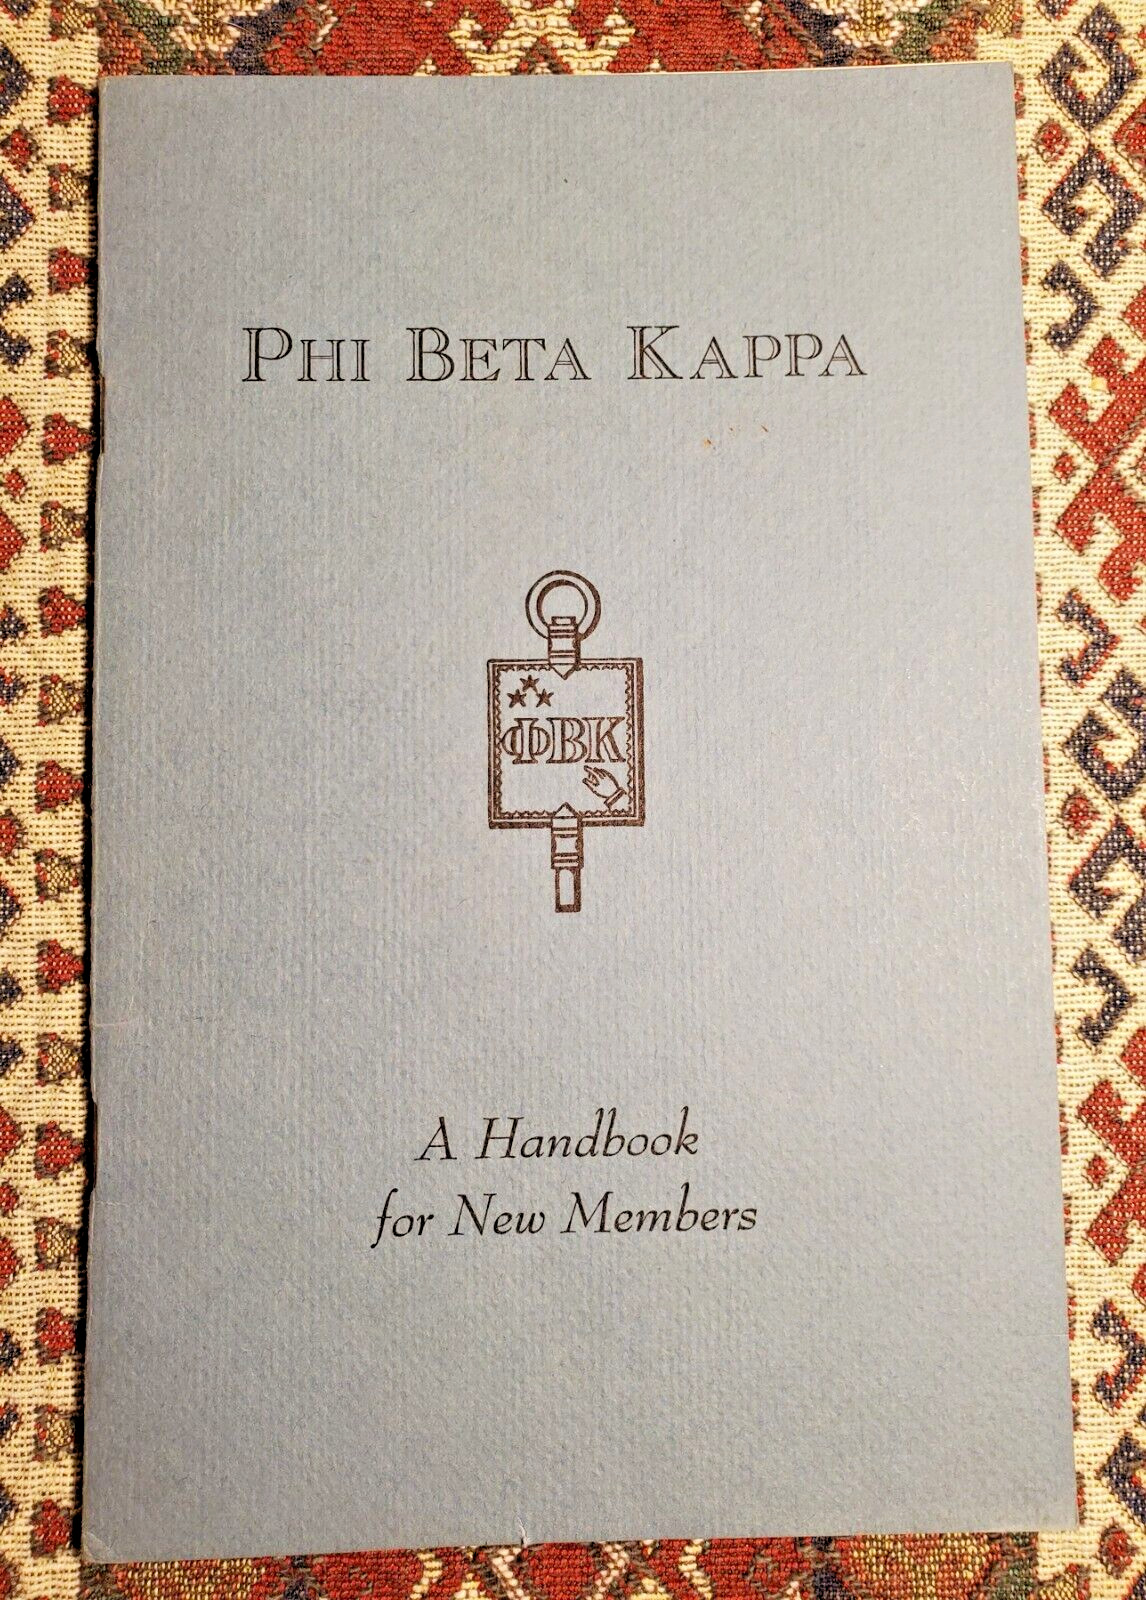 PHI BETA KAPPA, A HANDBOOK FOR NEW MEMBERS, 1976-79 AMERICAN SCHOLARS